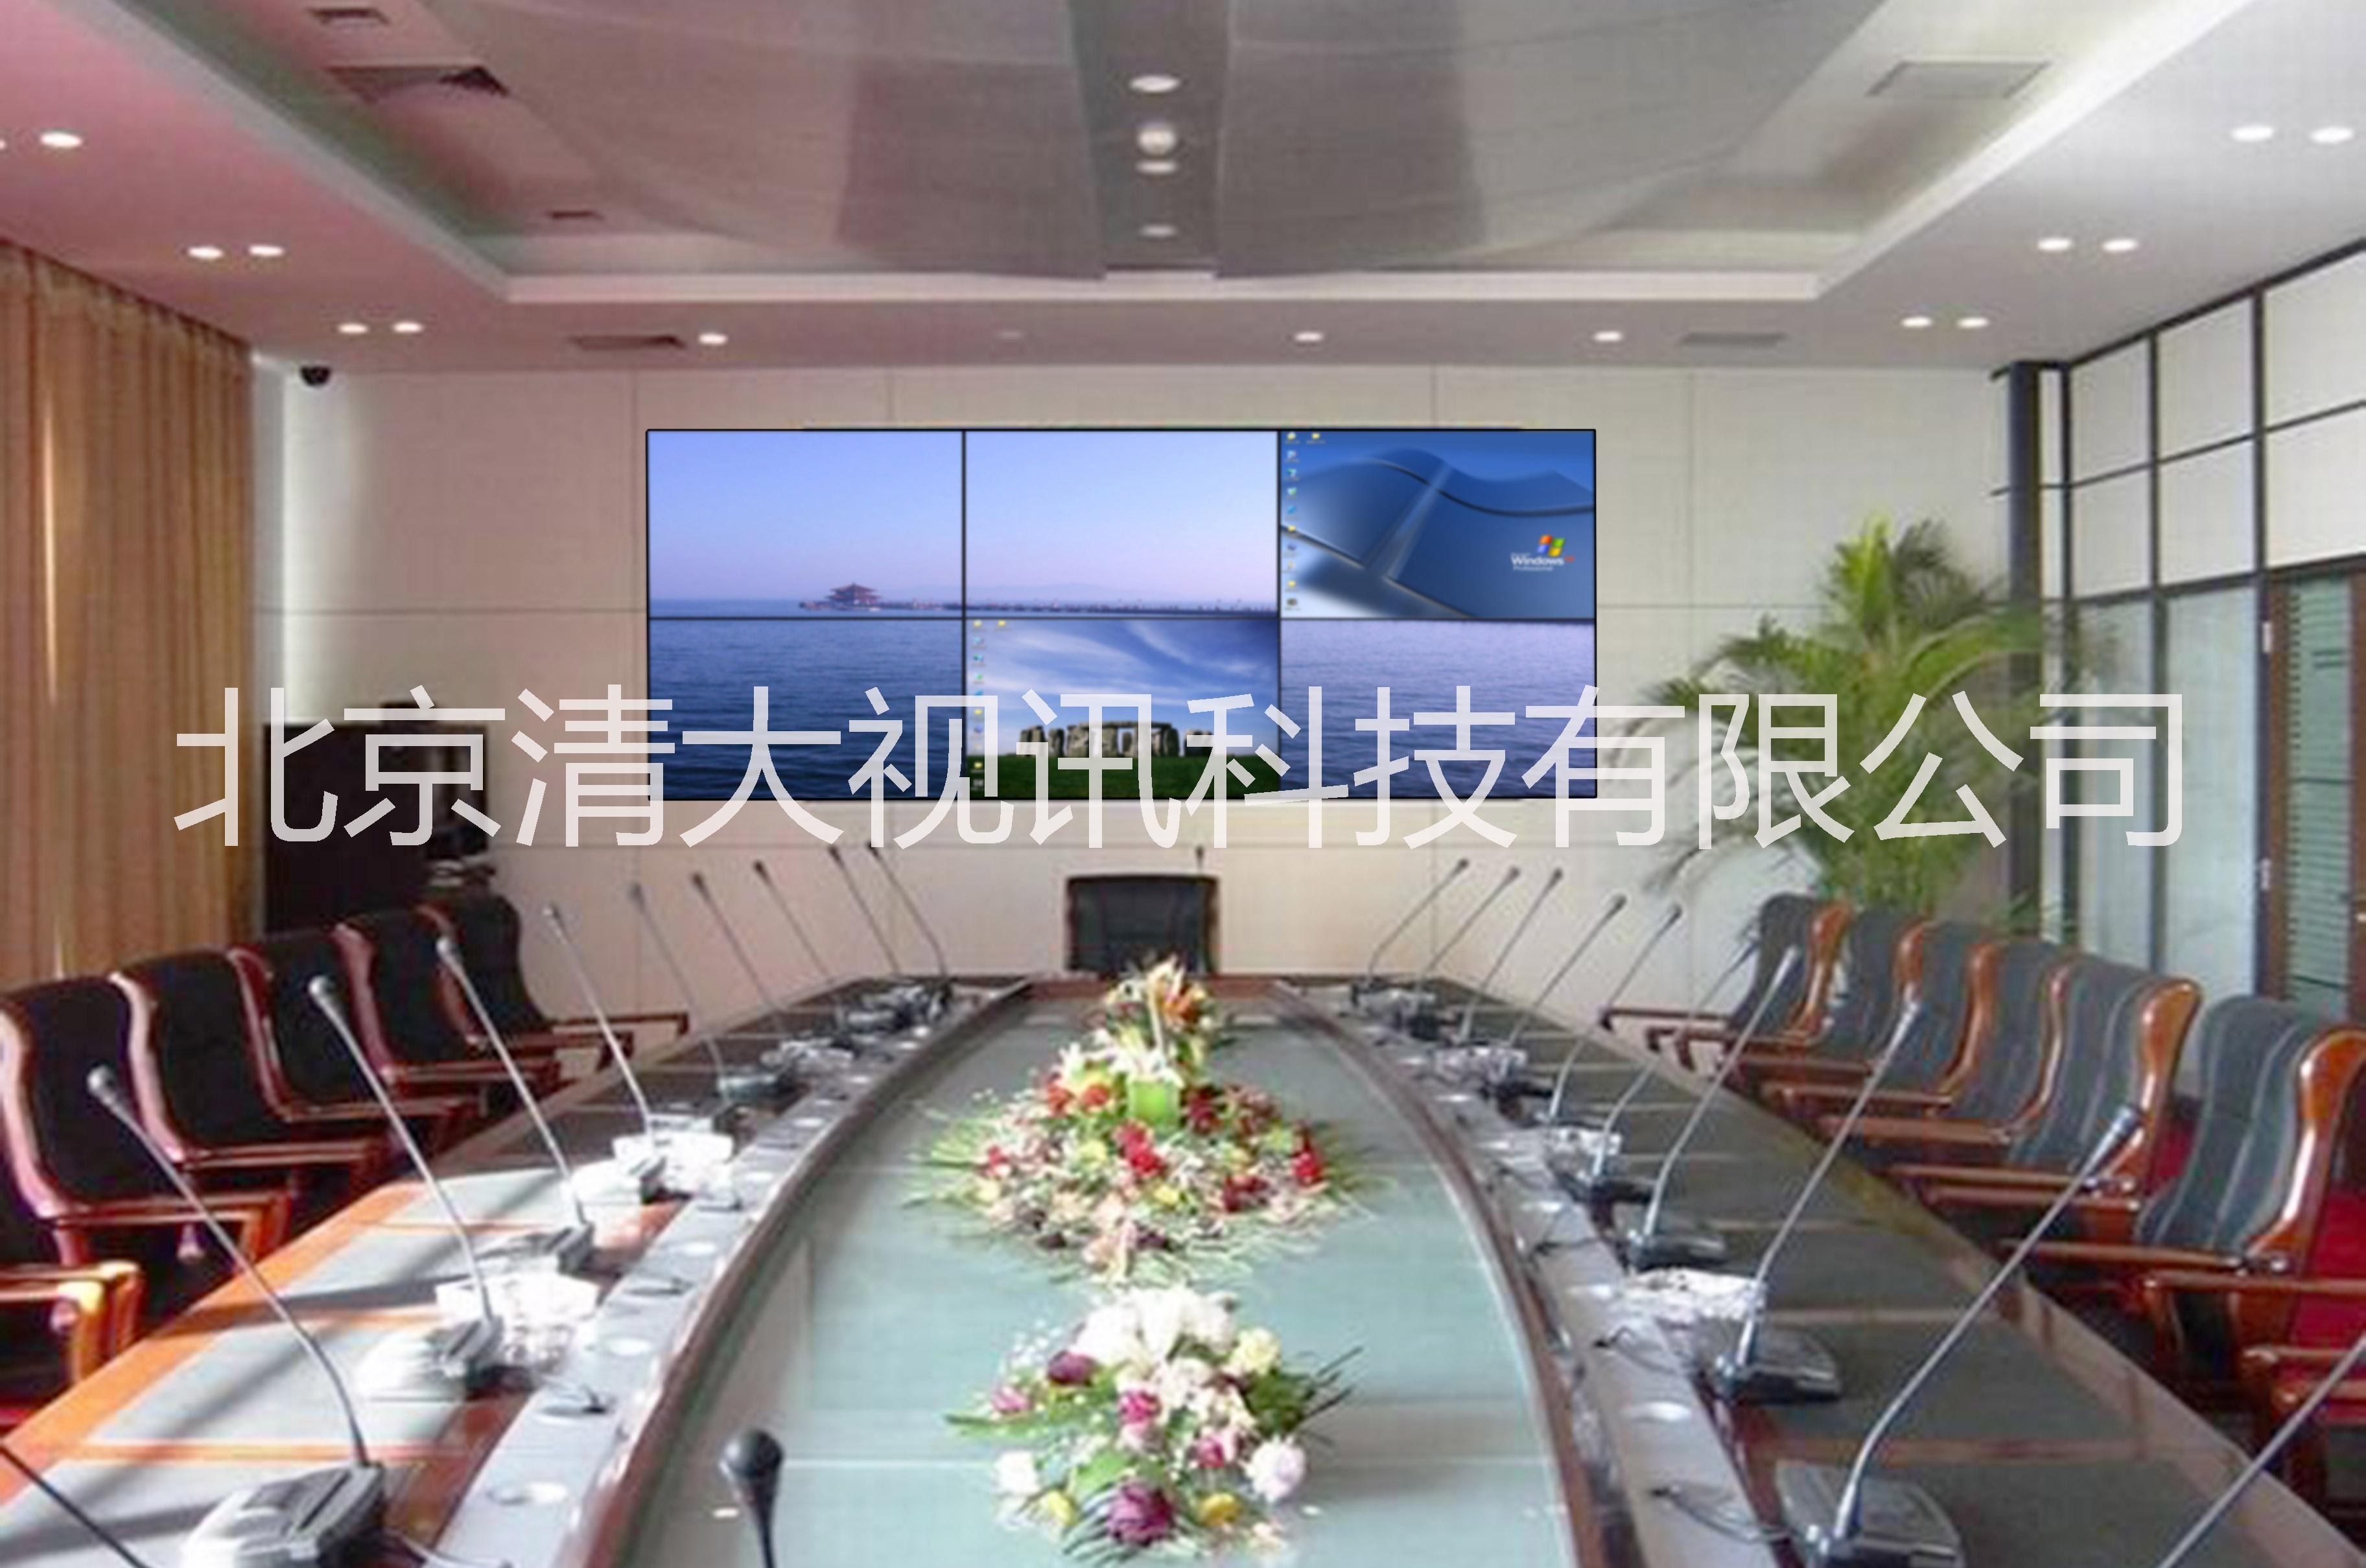 供应用于安防监控的北京海淀液晶拼接屏的厂家图片